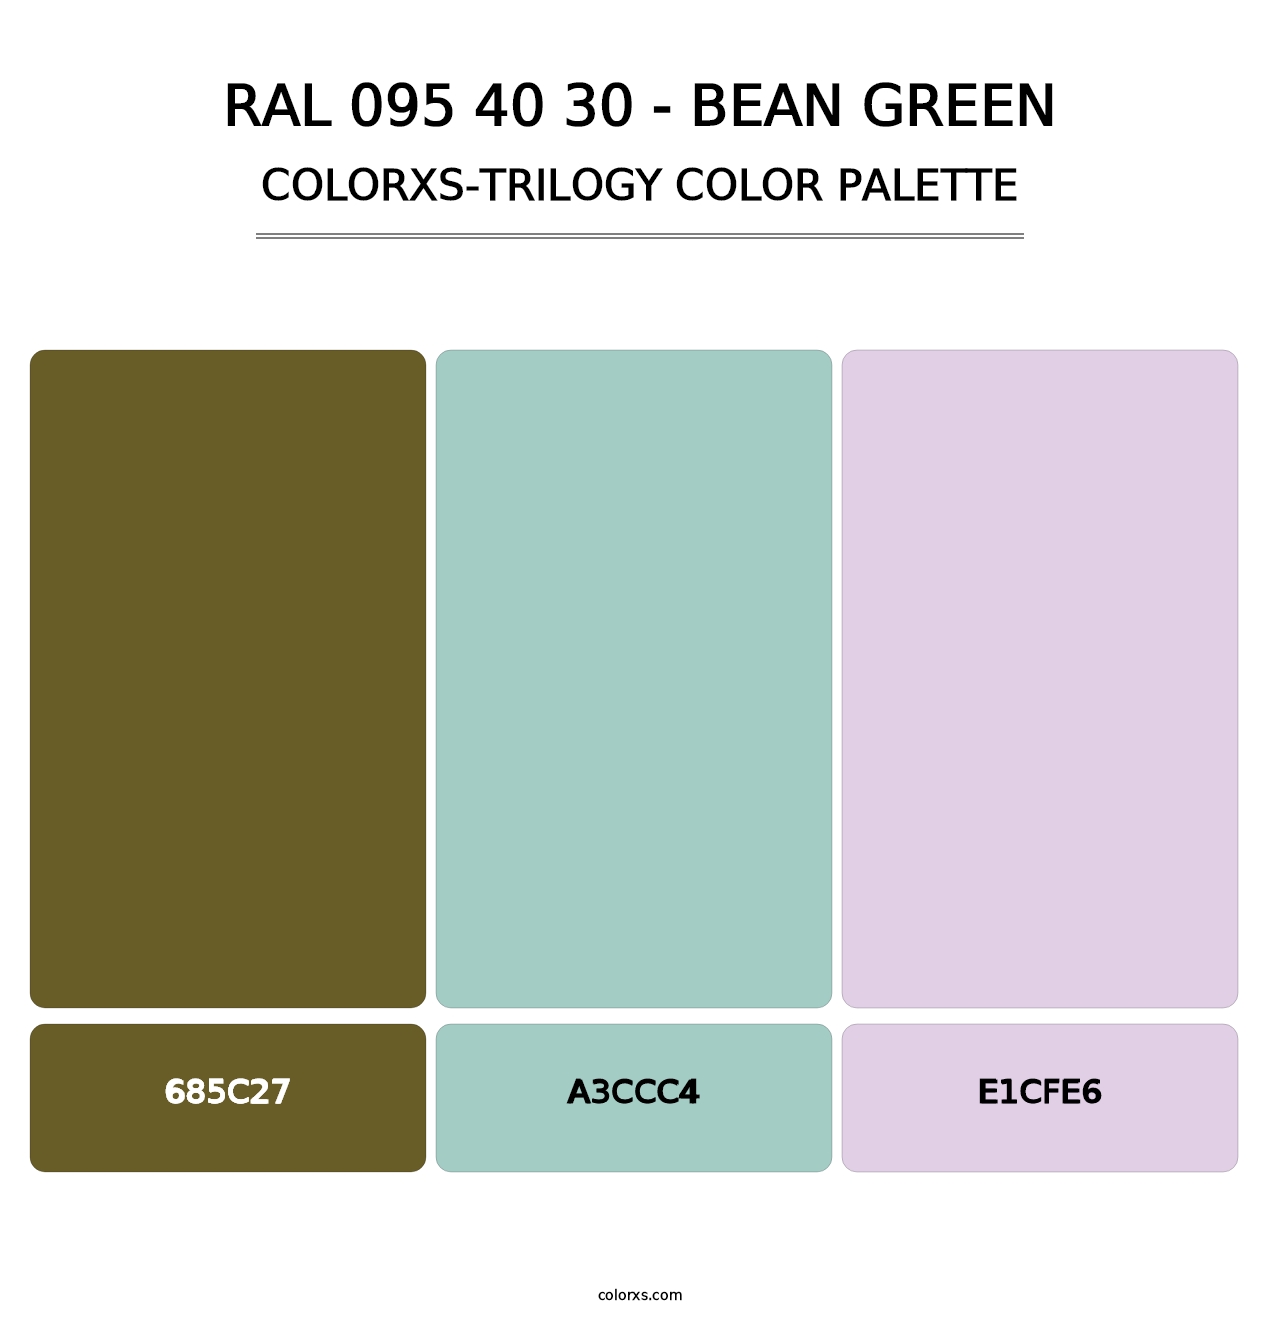 RAL 095 40 30 - Bean Green - Colorxs Trilogy Palette